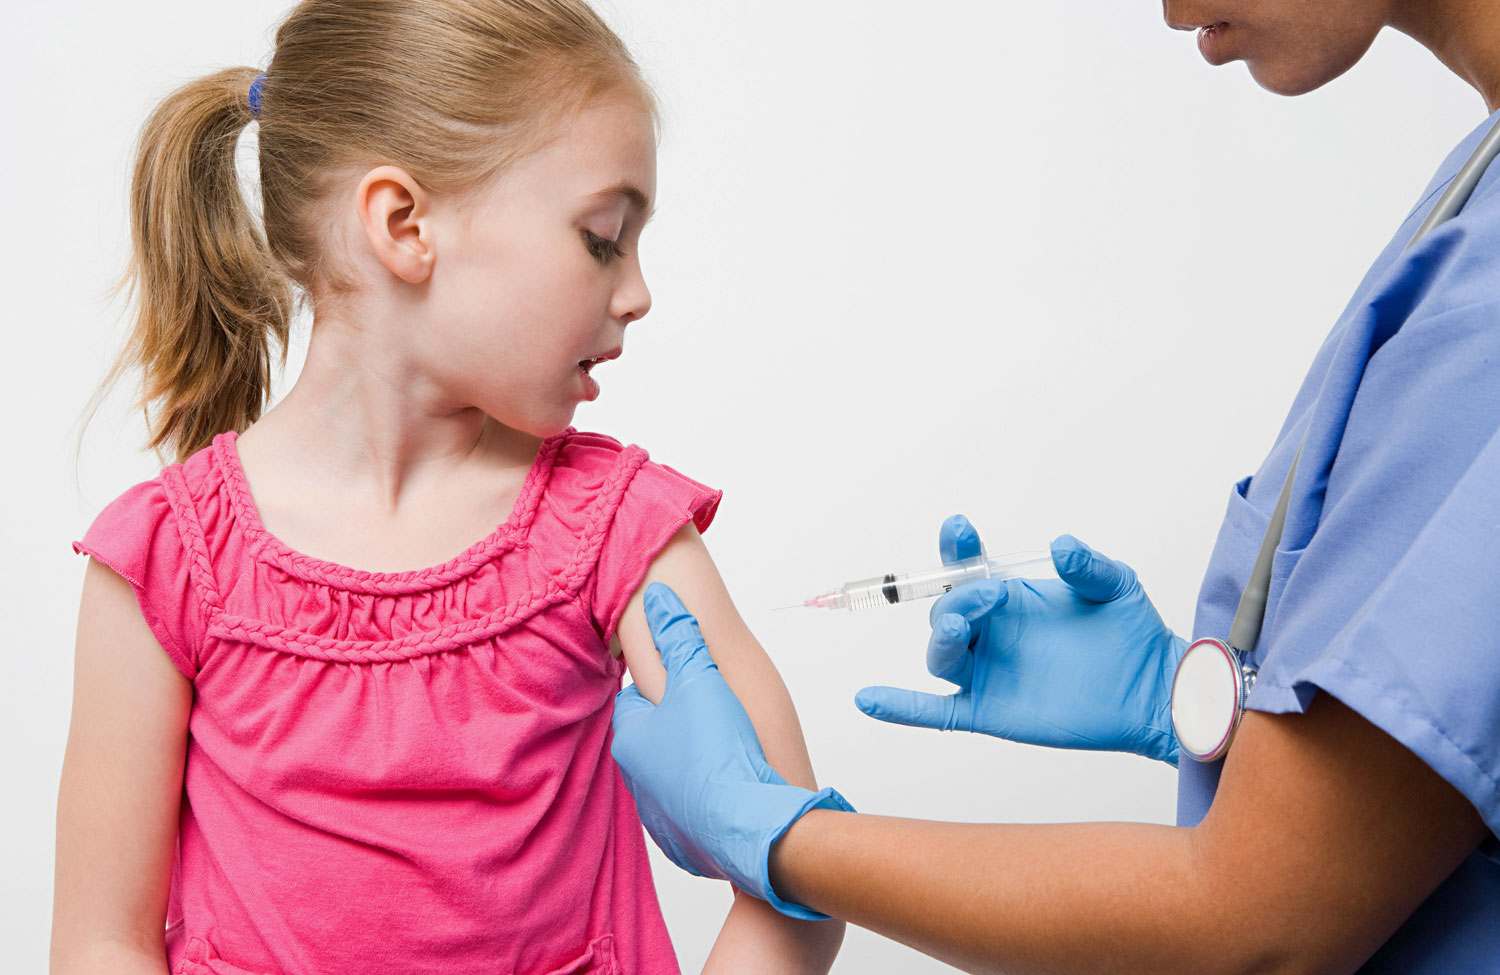 child-vaccination-syringe-immunization